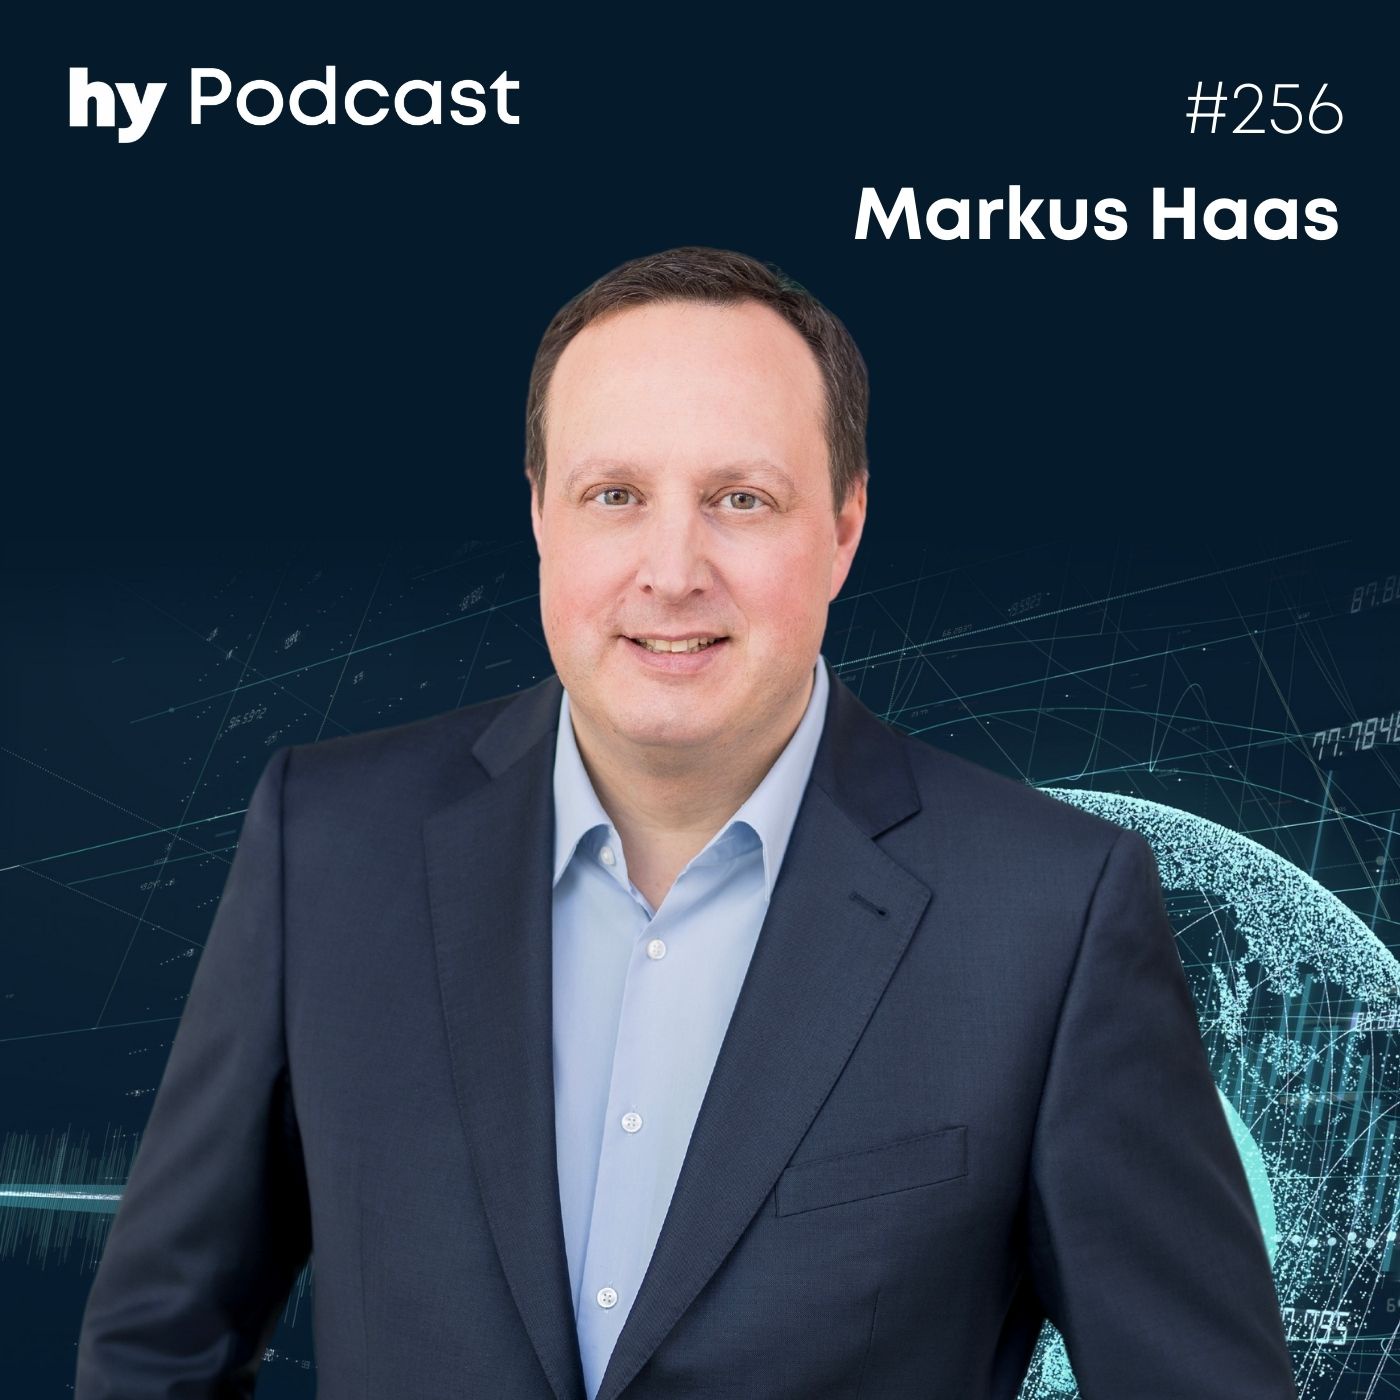 Folge 256 mit Markus Haas: Telefonicas Aufbruch in das virtuelle Netz